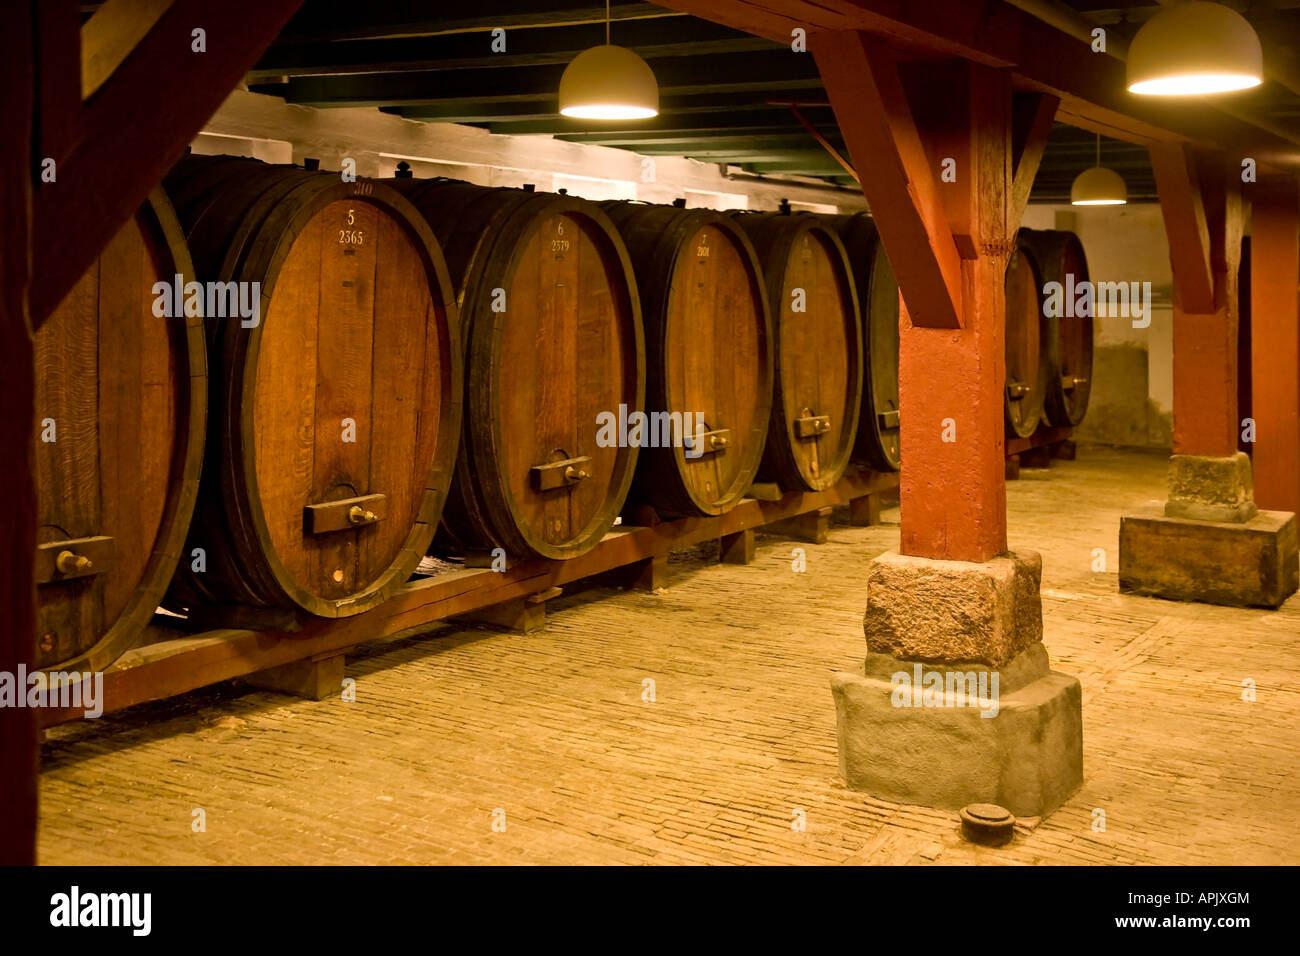 Oak barrels in old port wine cellar Stock Photo